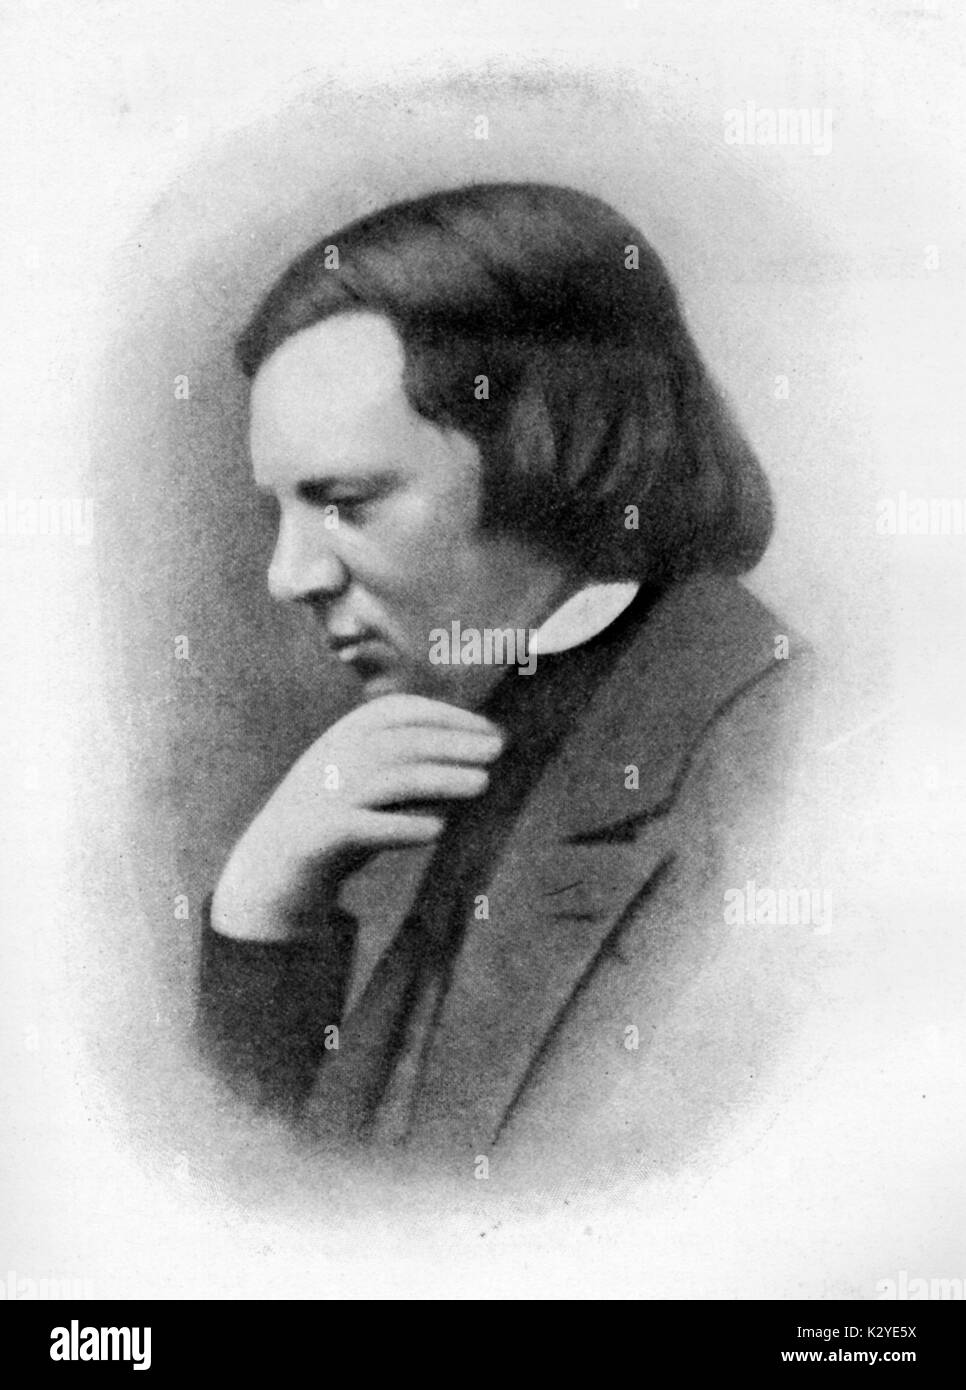 Robert Schumann - portrait de compositeur allemand. Début de l'exemple de daguerréotype, 1850. 1810-1856 Banque D'Images